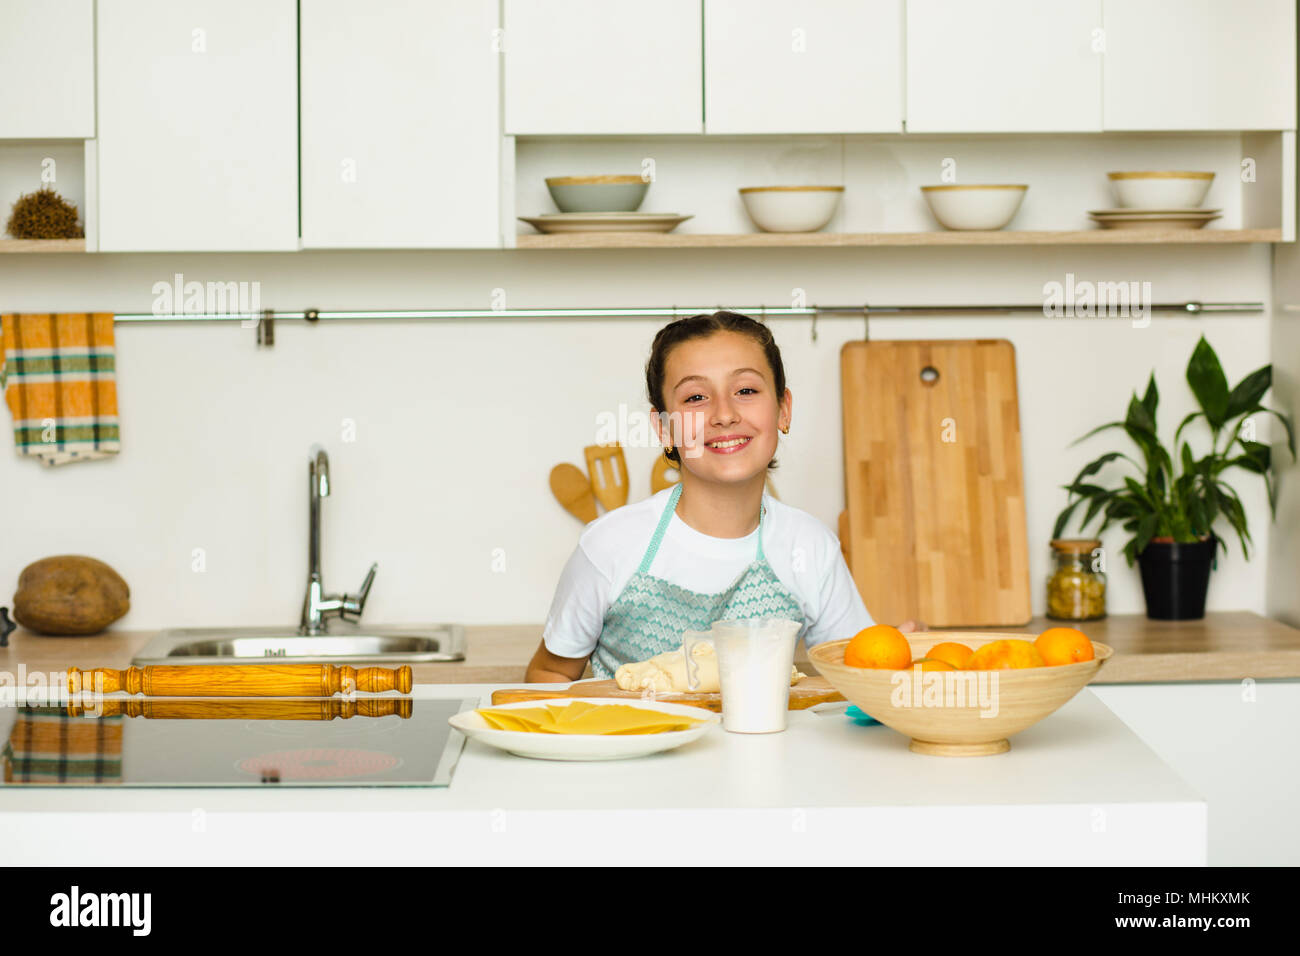 Belle jeune fille vêtue d'un tablier, la préparation de gâteau orange, debout dans une belle maison cuisine. Heureux l'enfant est la cuisine Banque D'Images